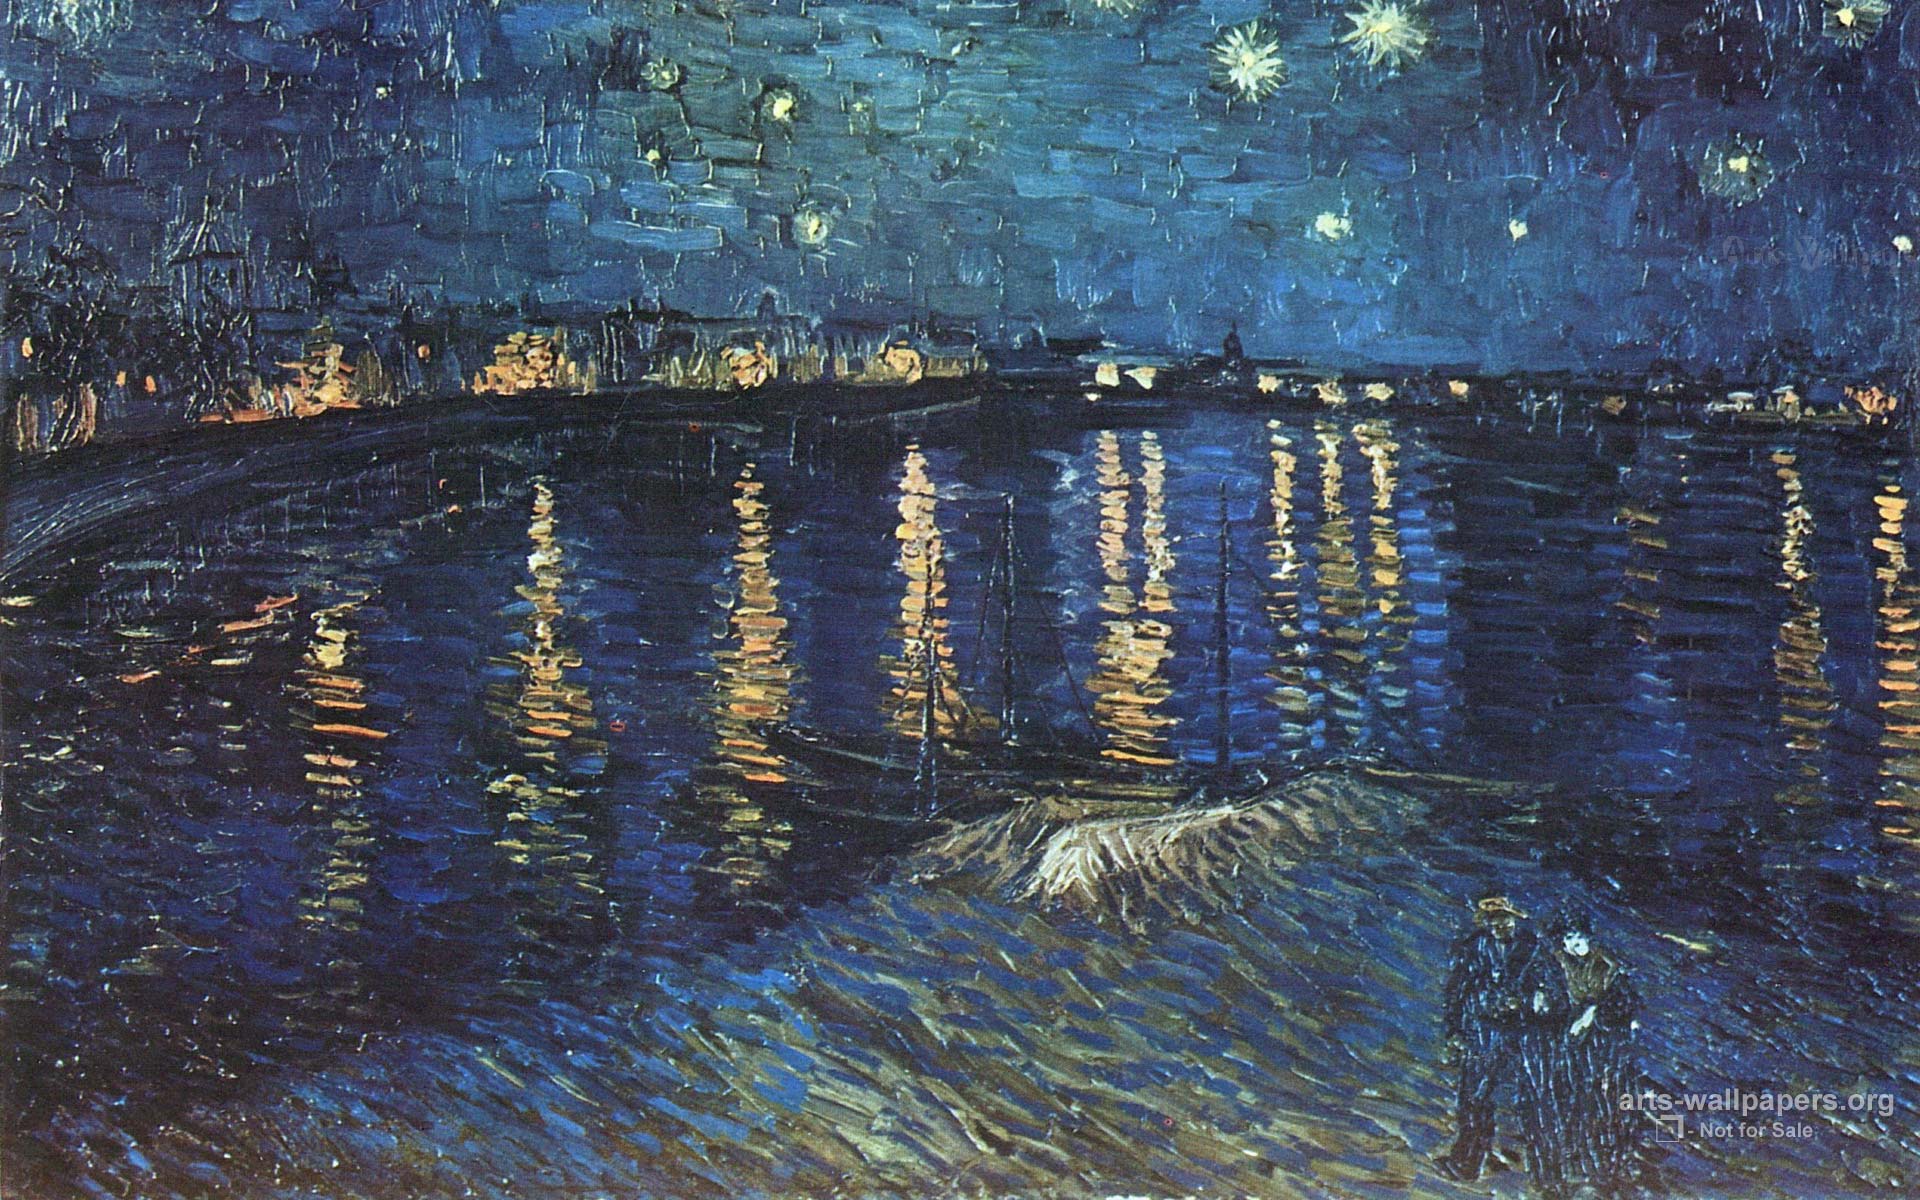 Arts Wallpaper Org Art Vincent Van Gogh Index Htm